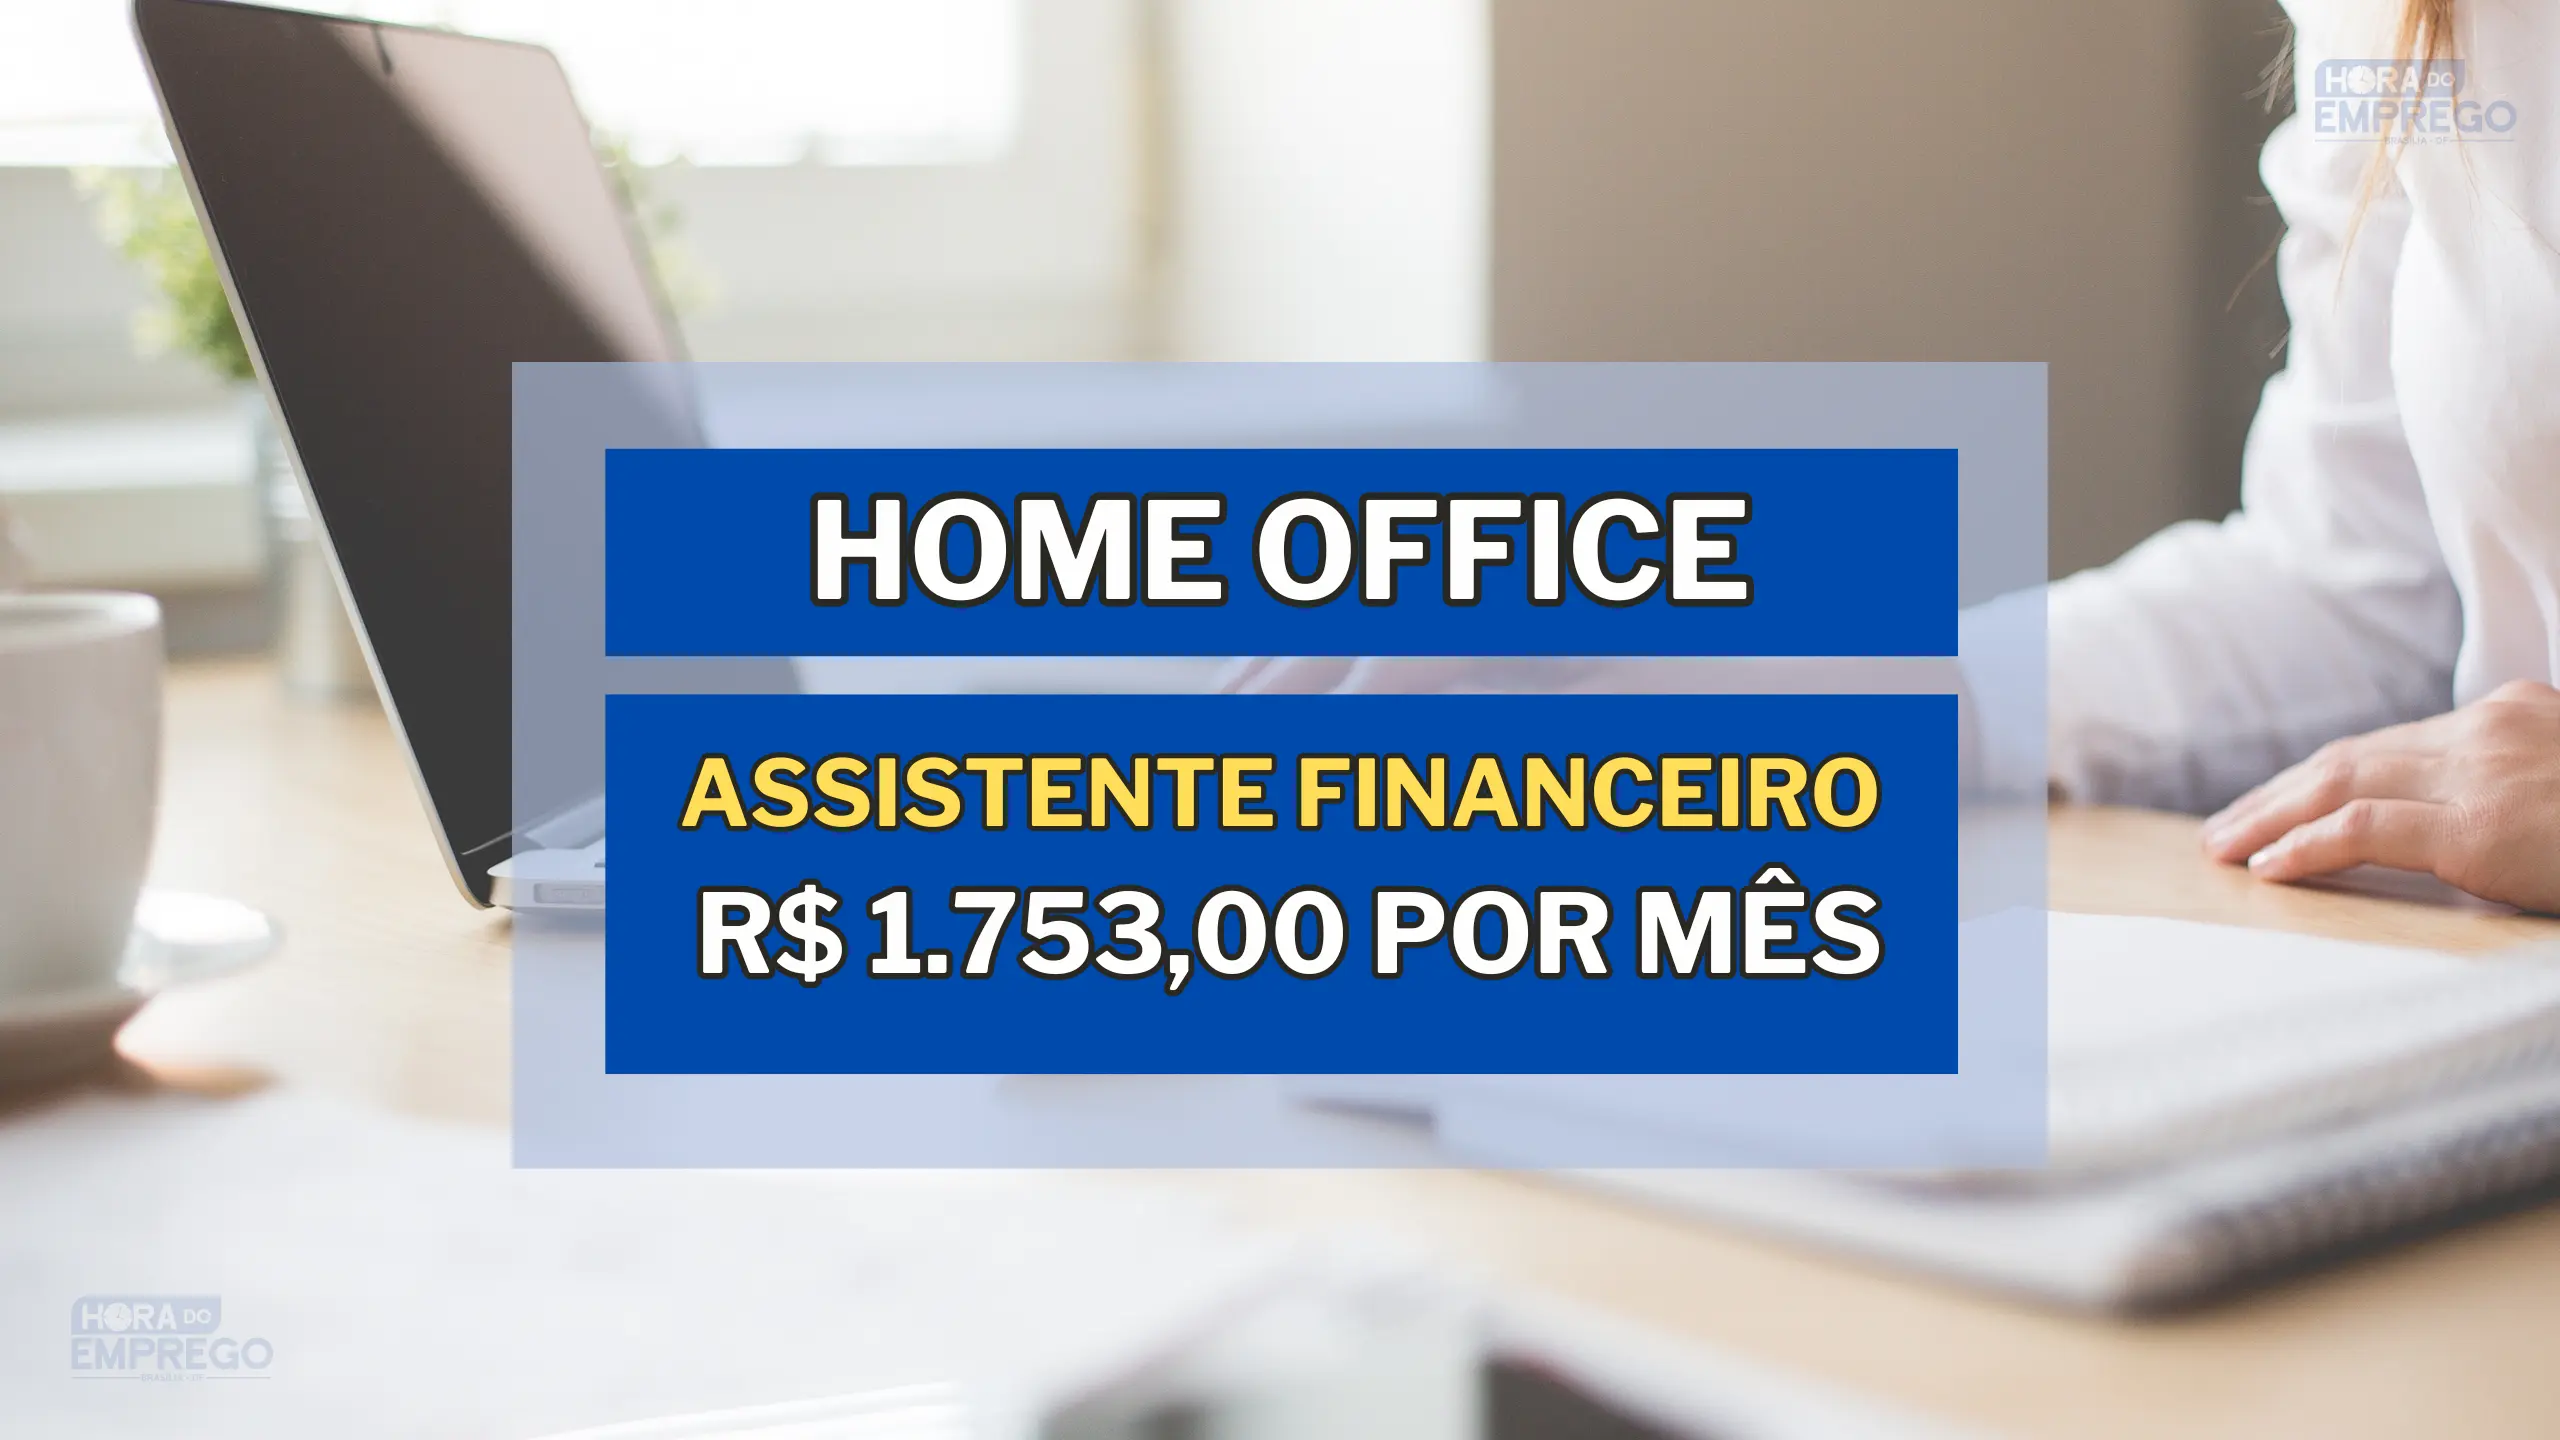 Assistente Financeiro em HOME OFFICE com Remuneração de R$ 1.753,00 por mês